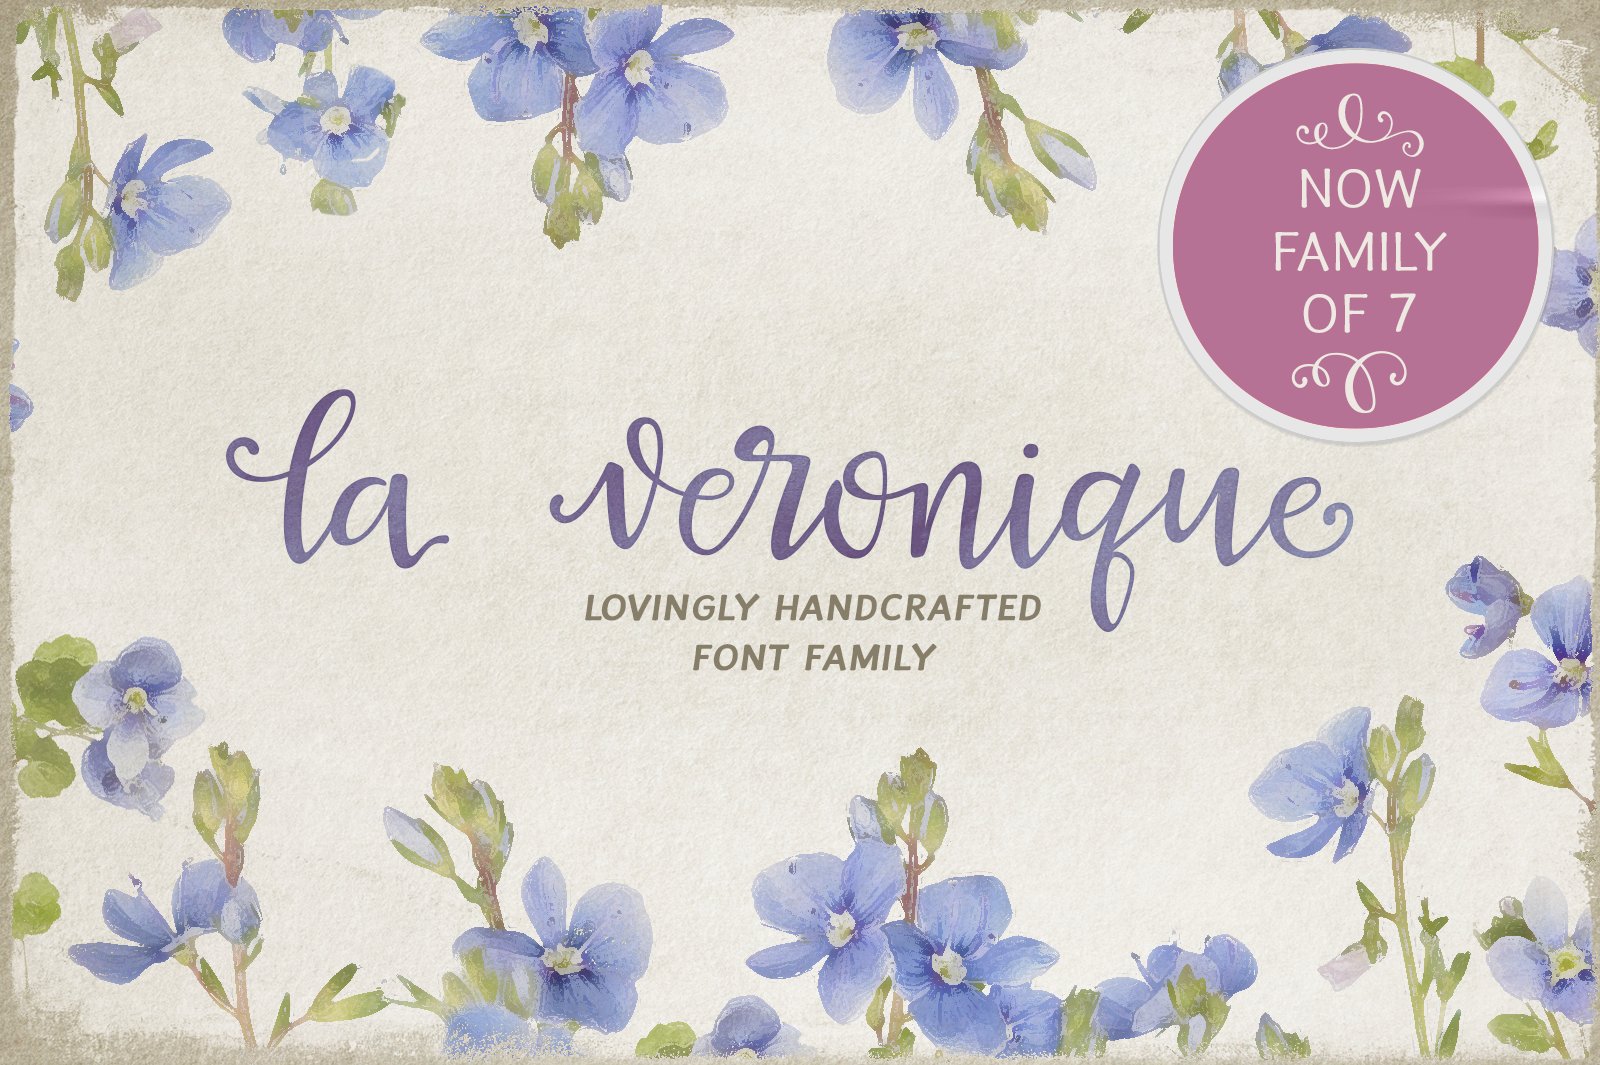 La Veronique Family cover image.